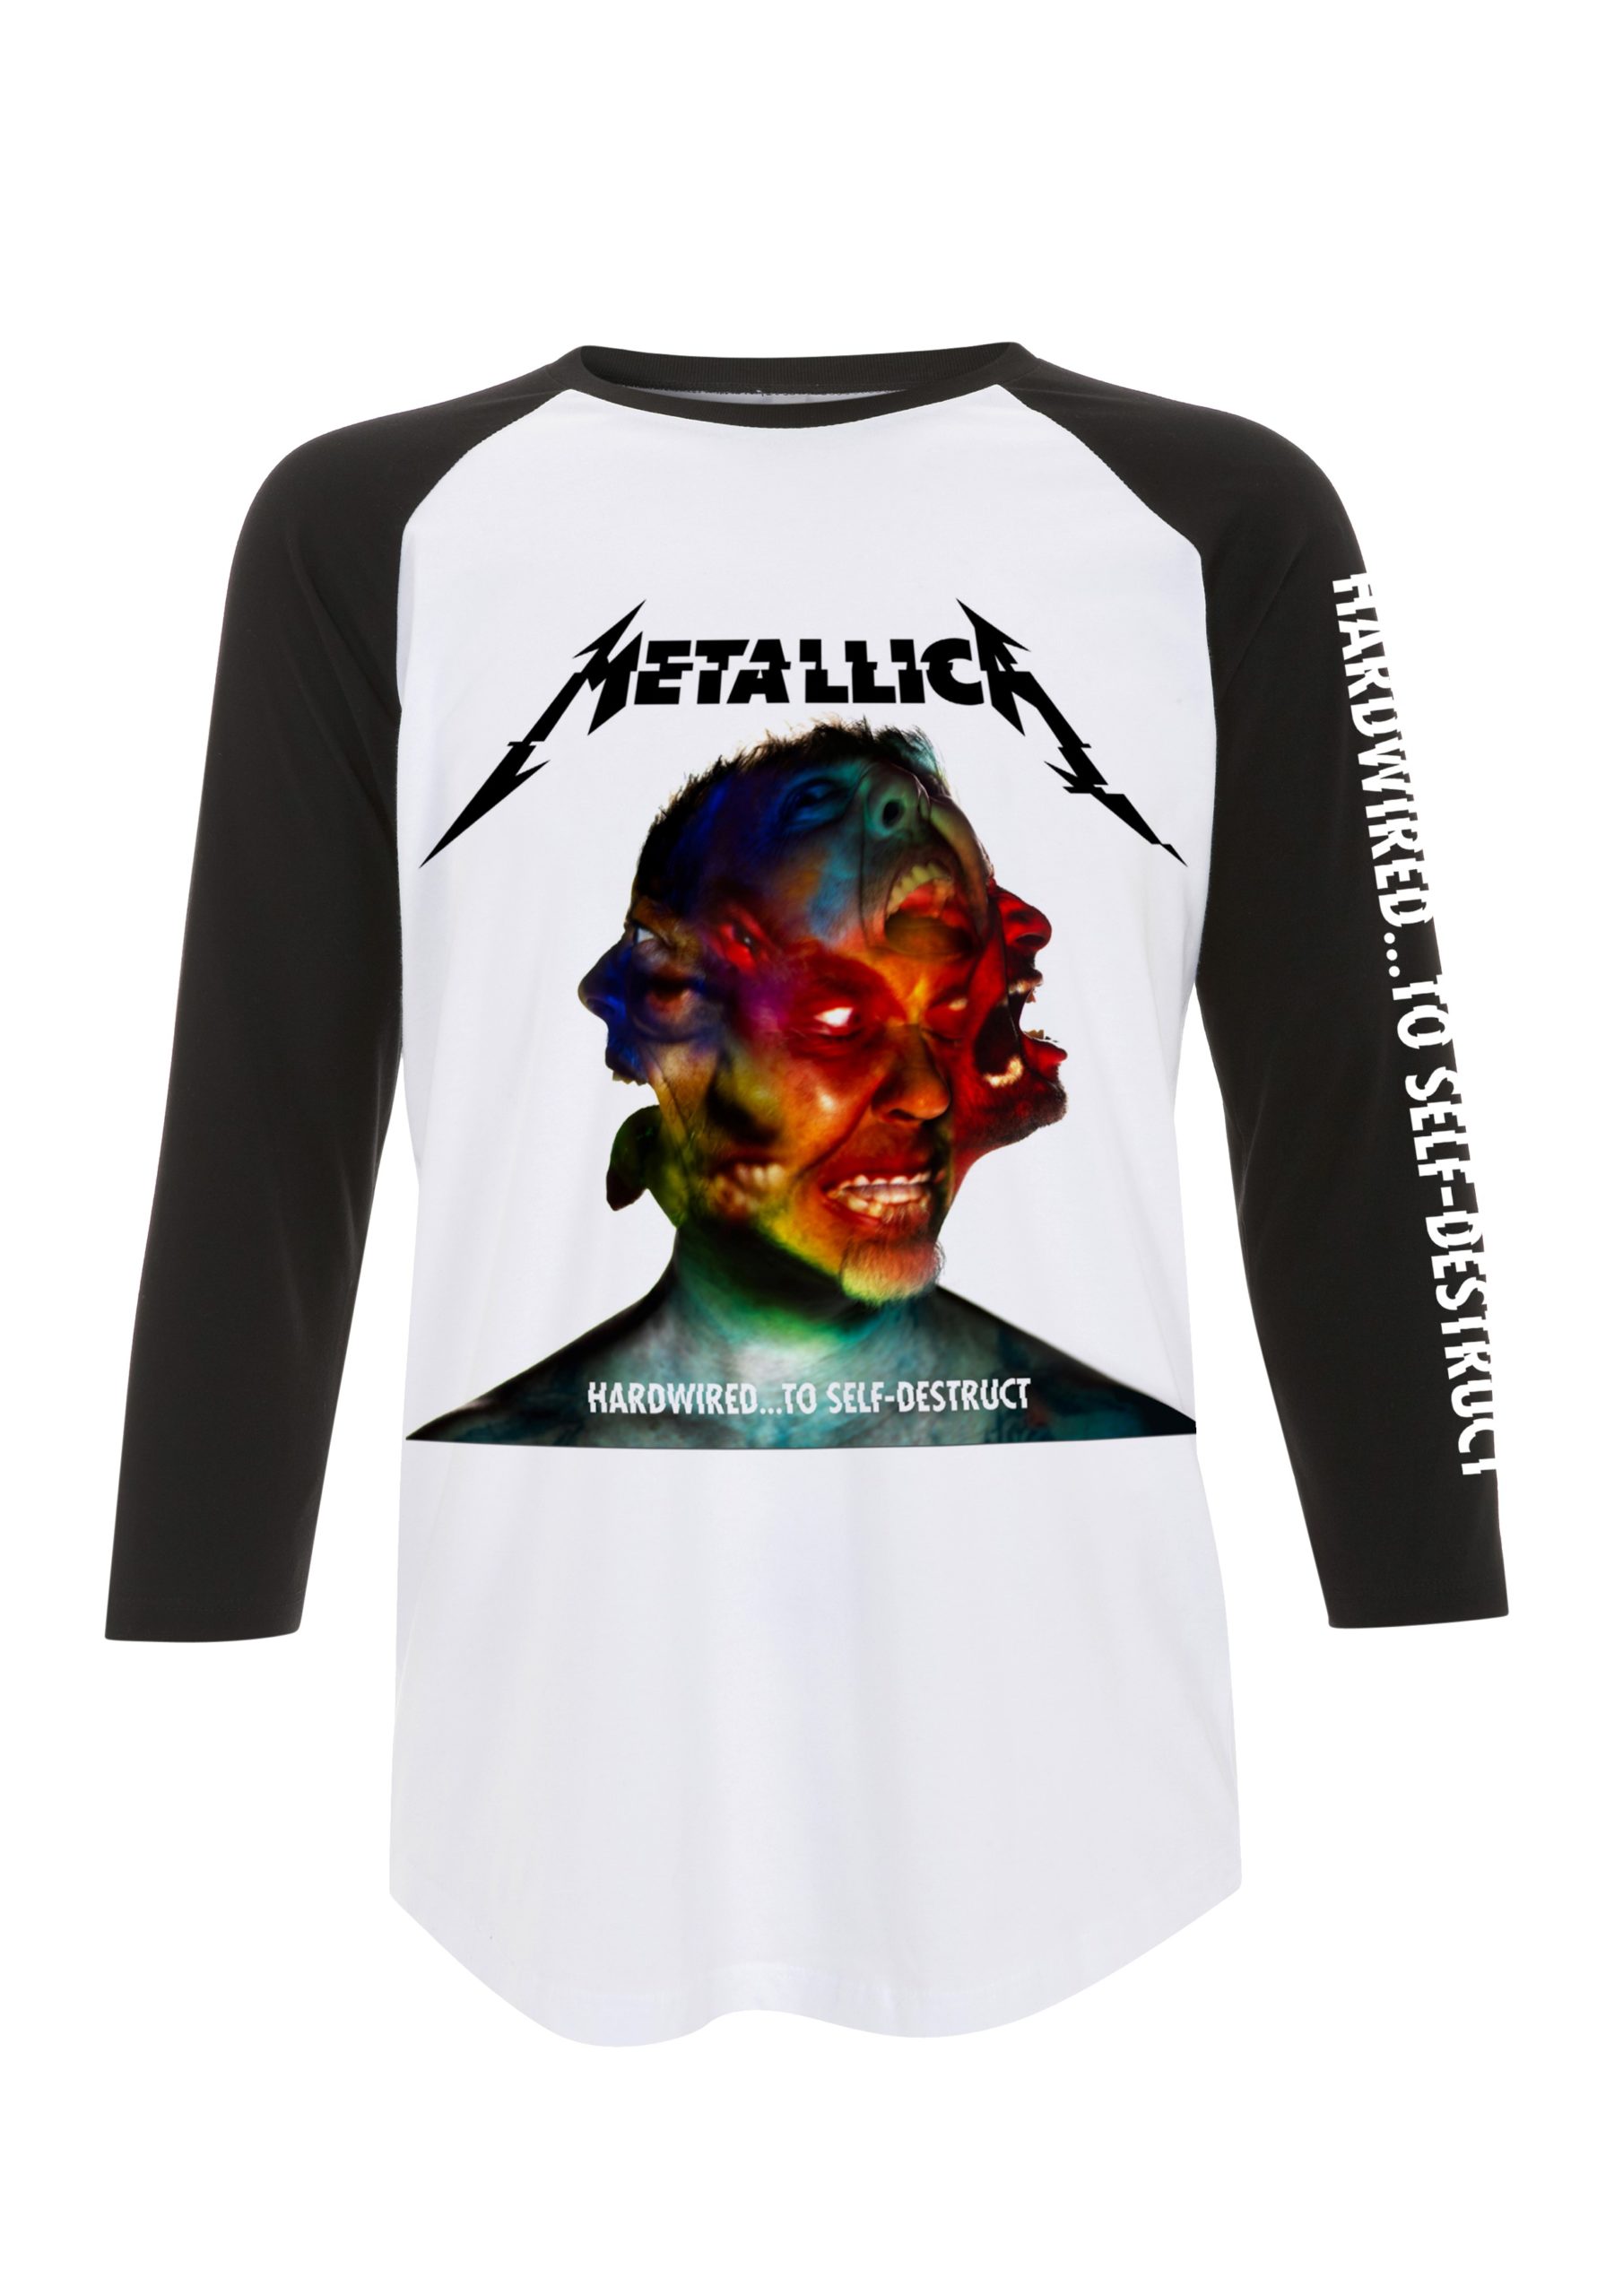 Metallica Hardwired Album Cover Men's White/Black Baseball T-Shirt